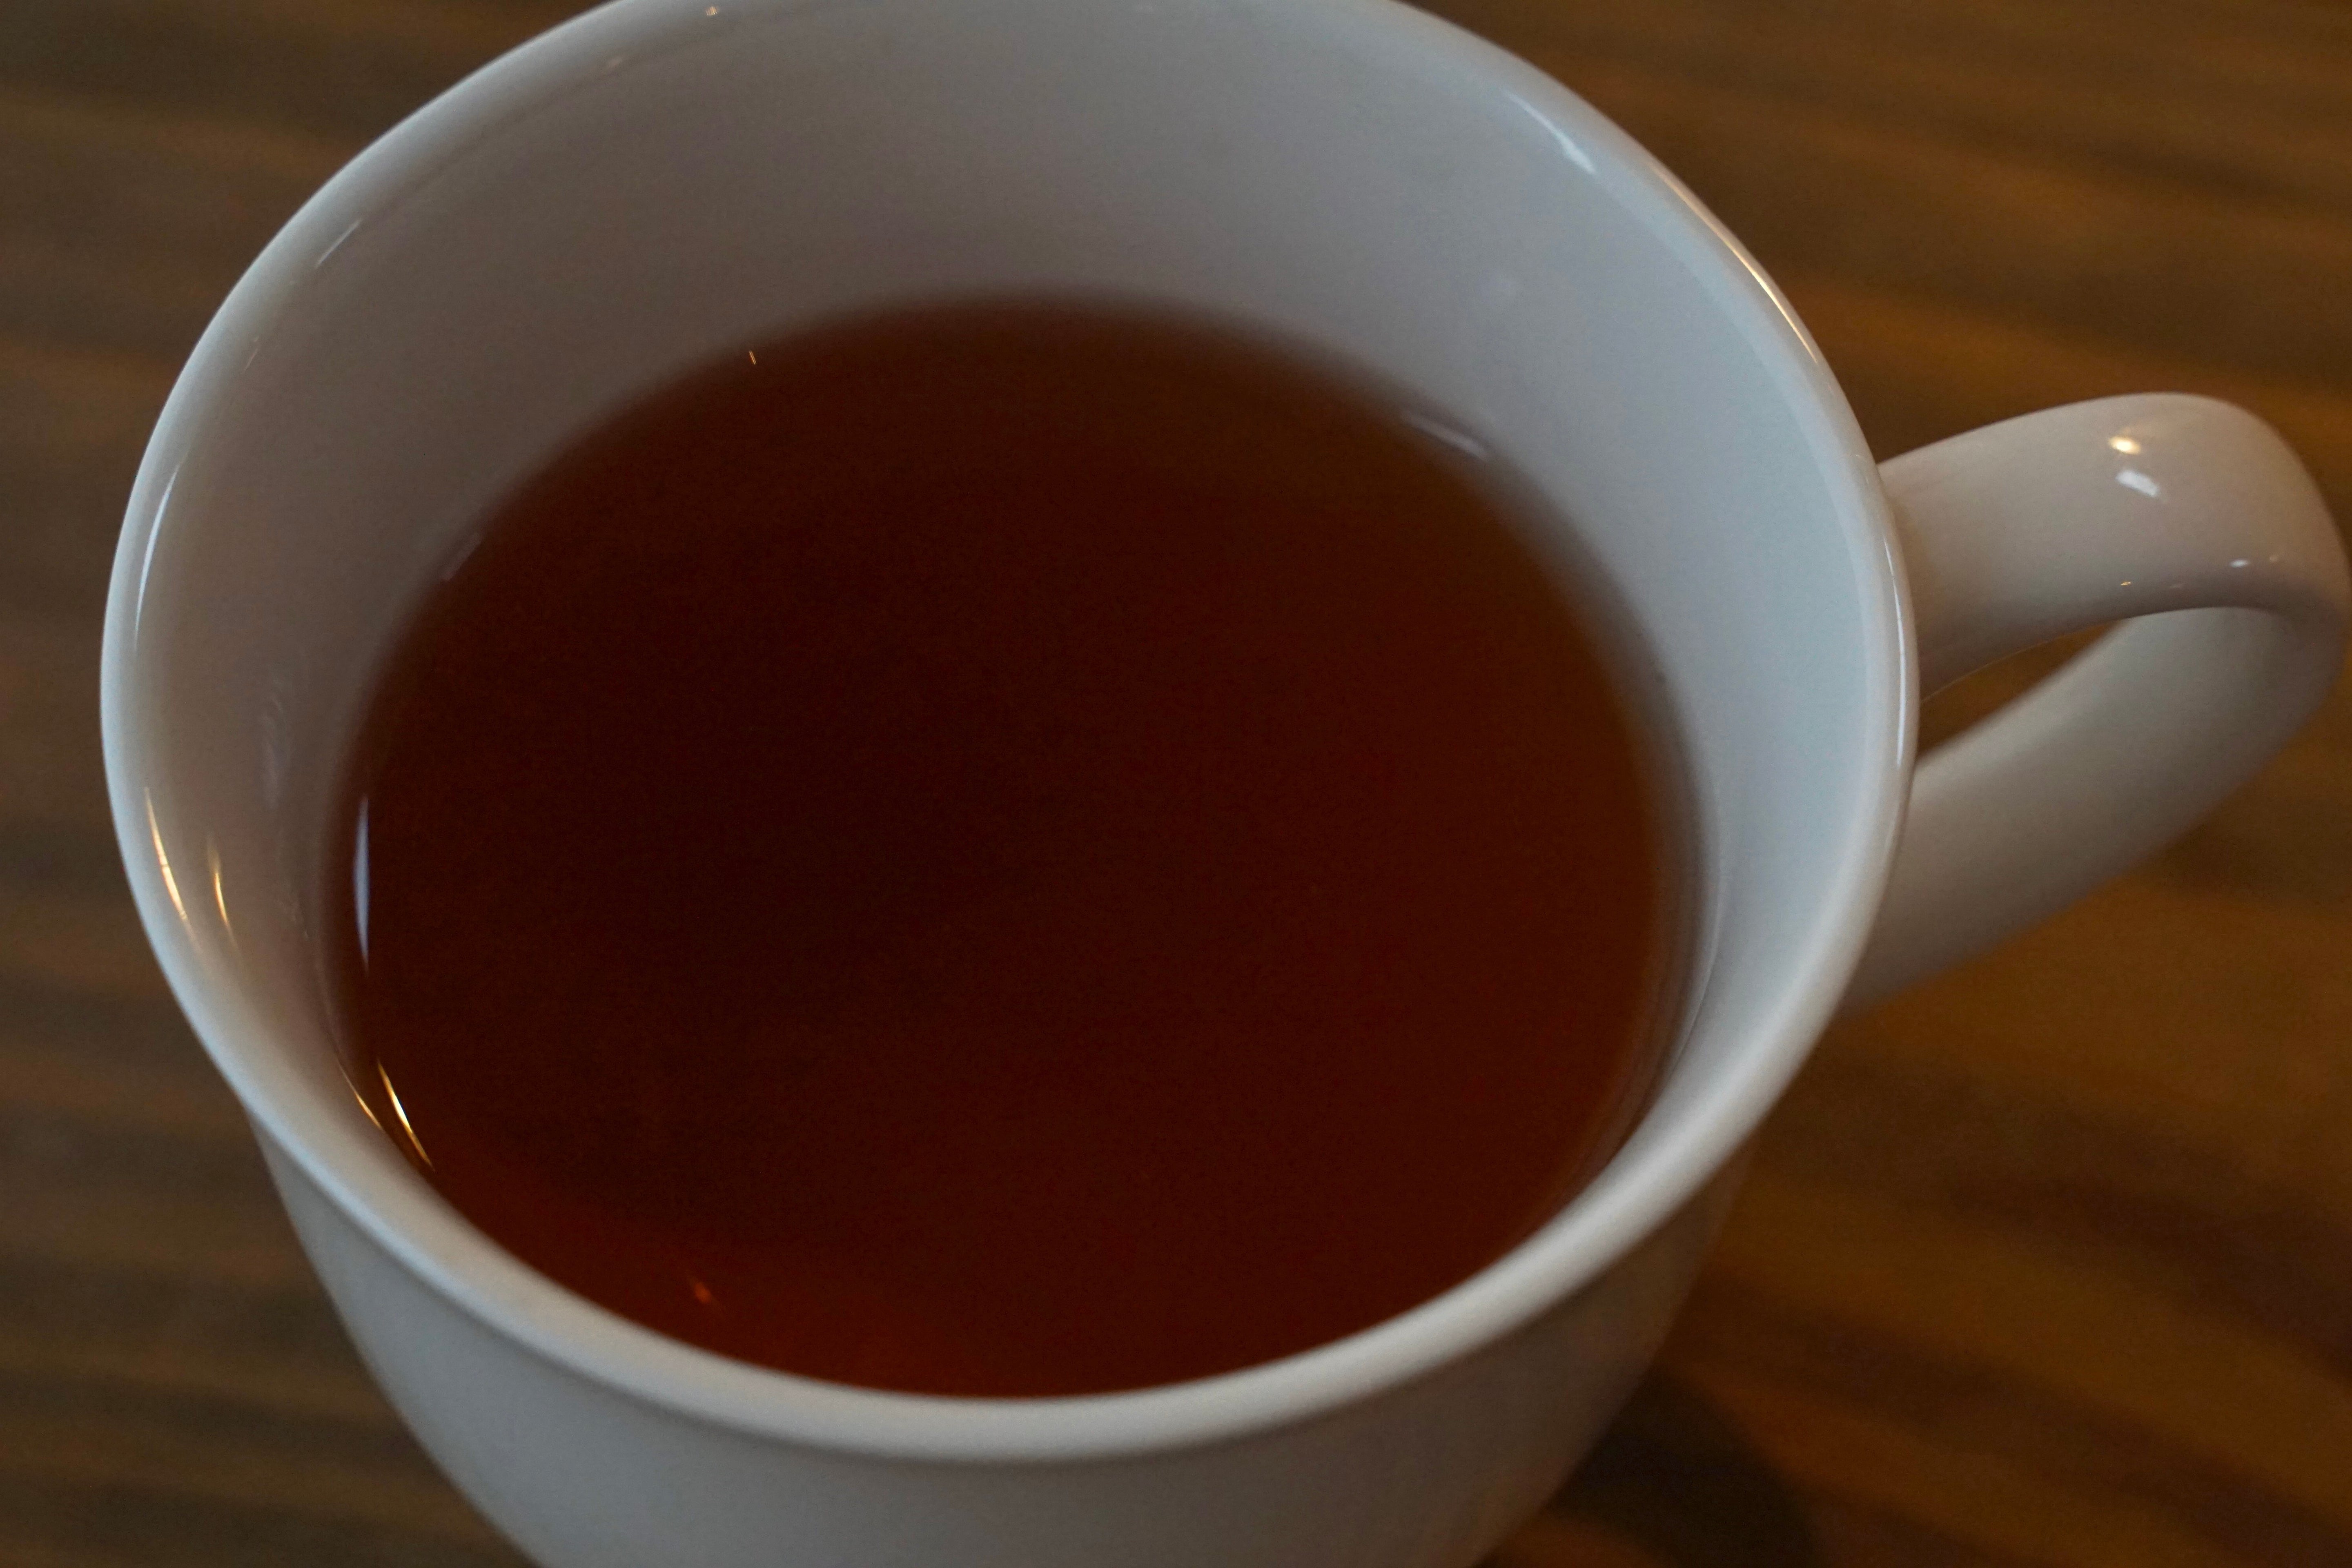 【イラム紅茶スルヤダヤ茶園 新茶】ダージリン隣接地産 稀少ネパール紅茶 さわやかな香り